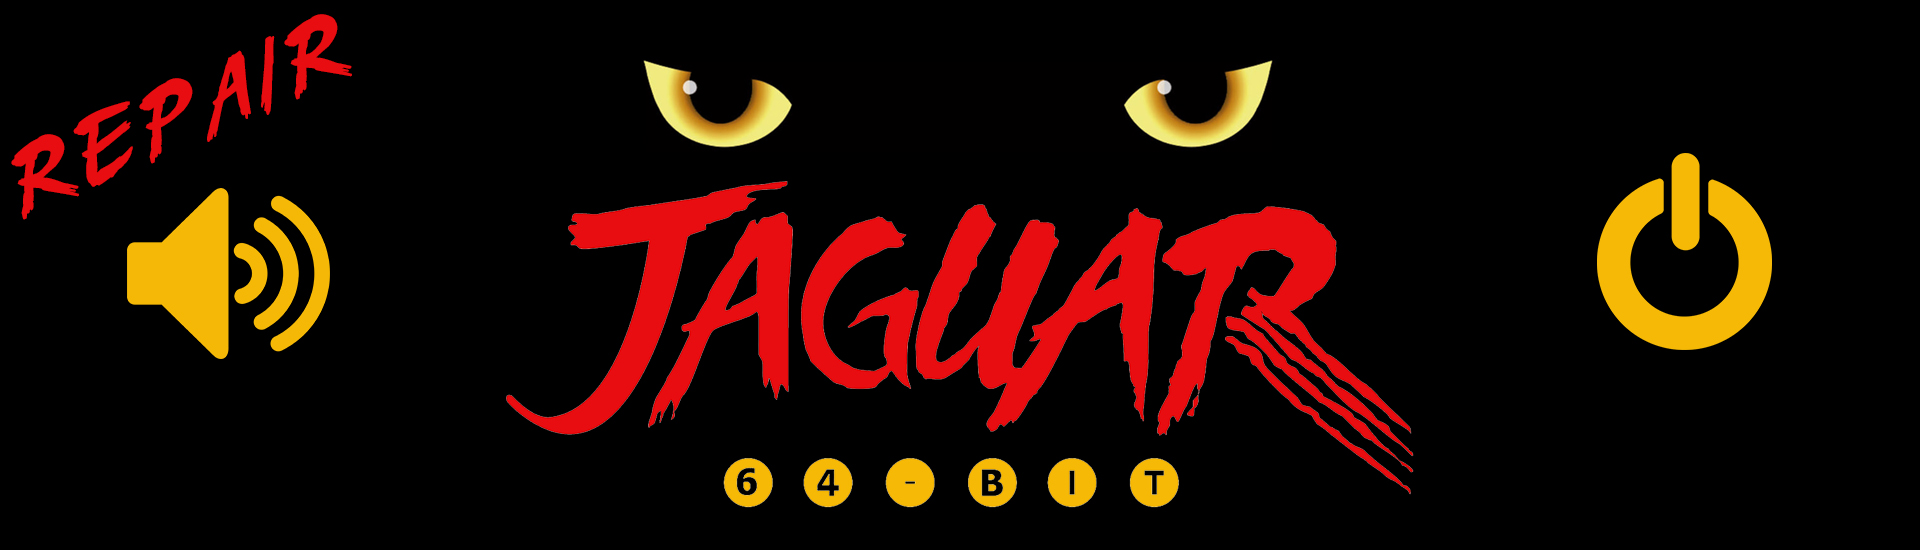 Atari Jaguar repair riparazione